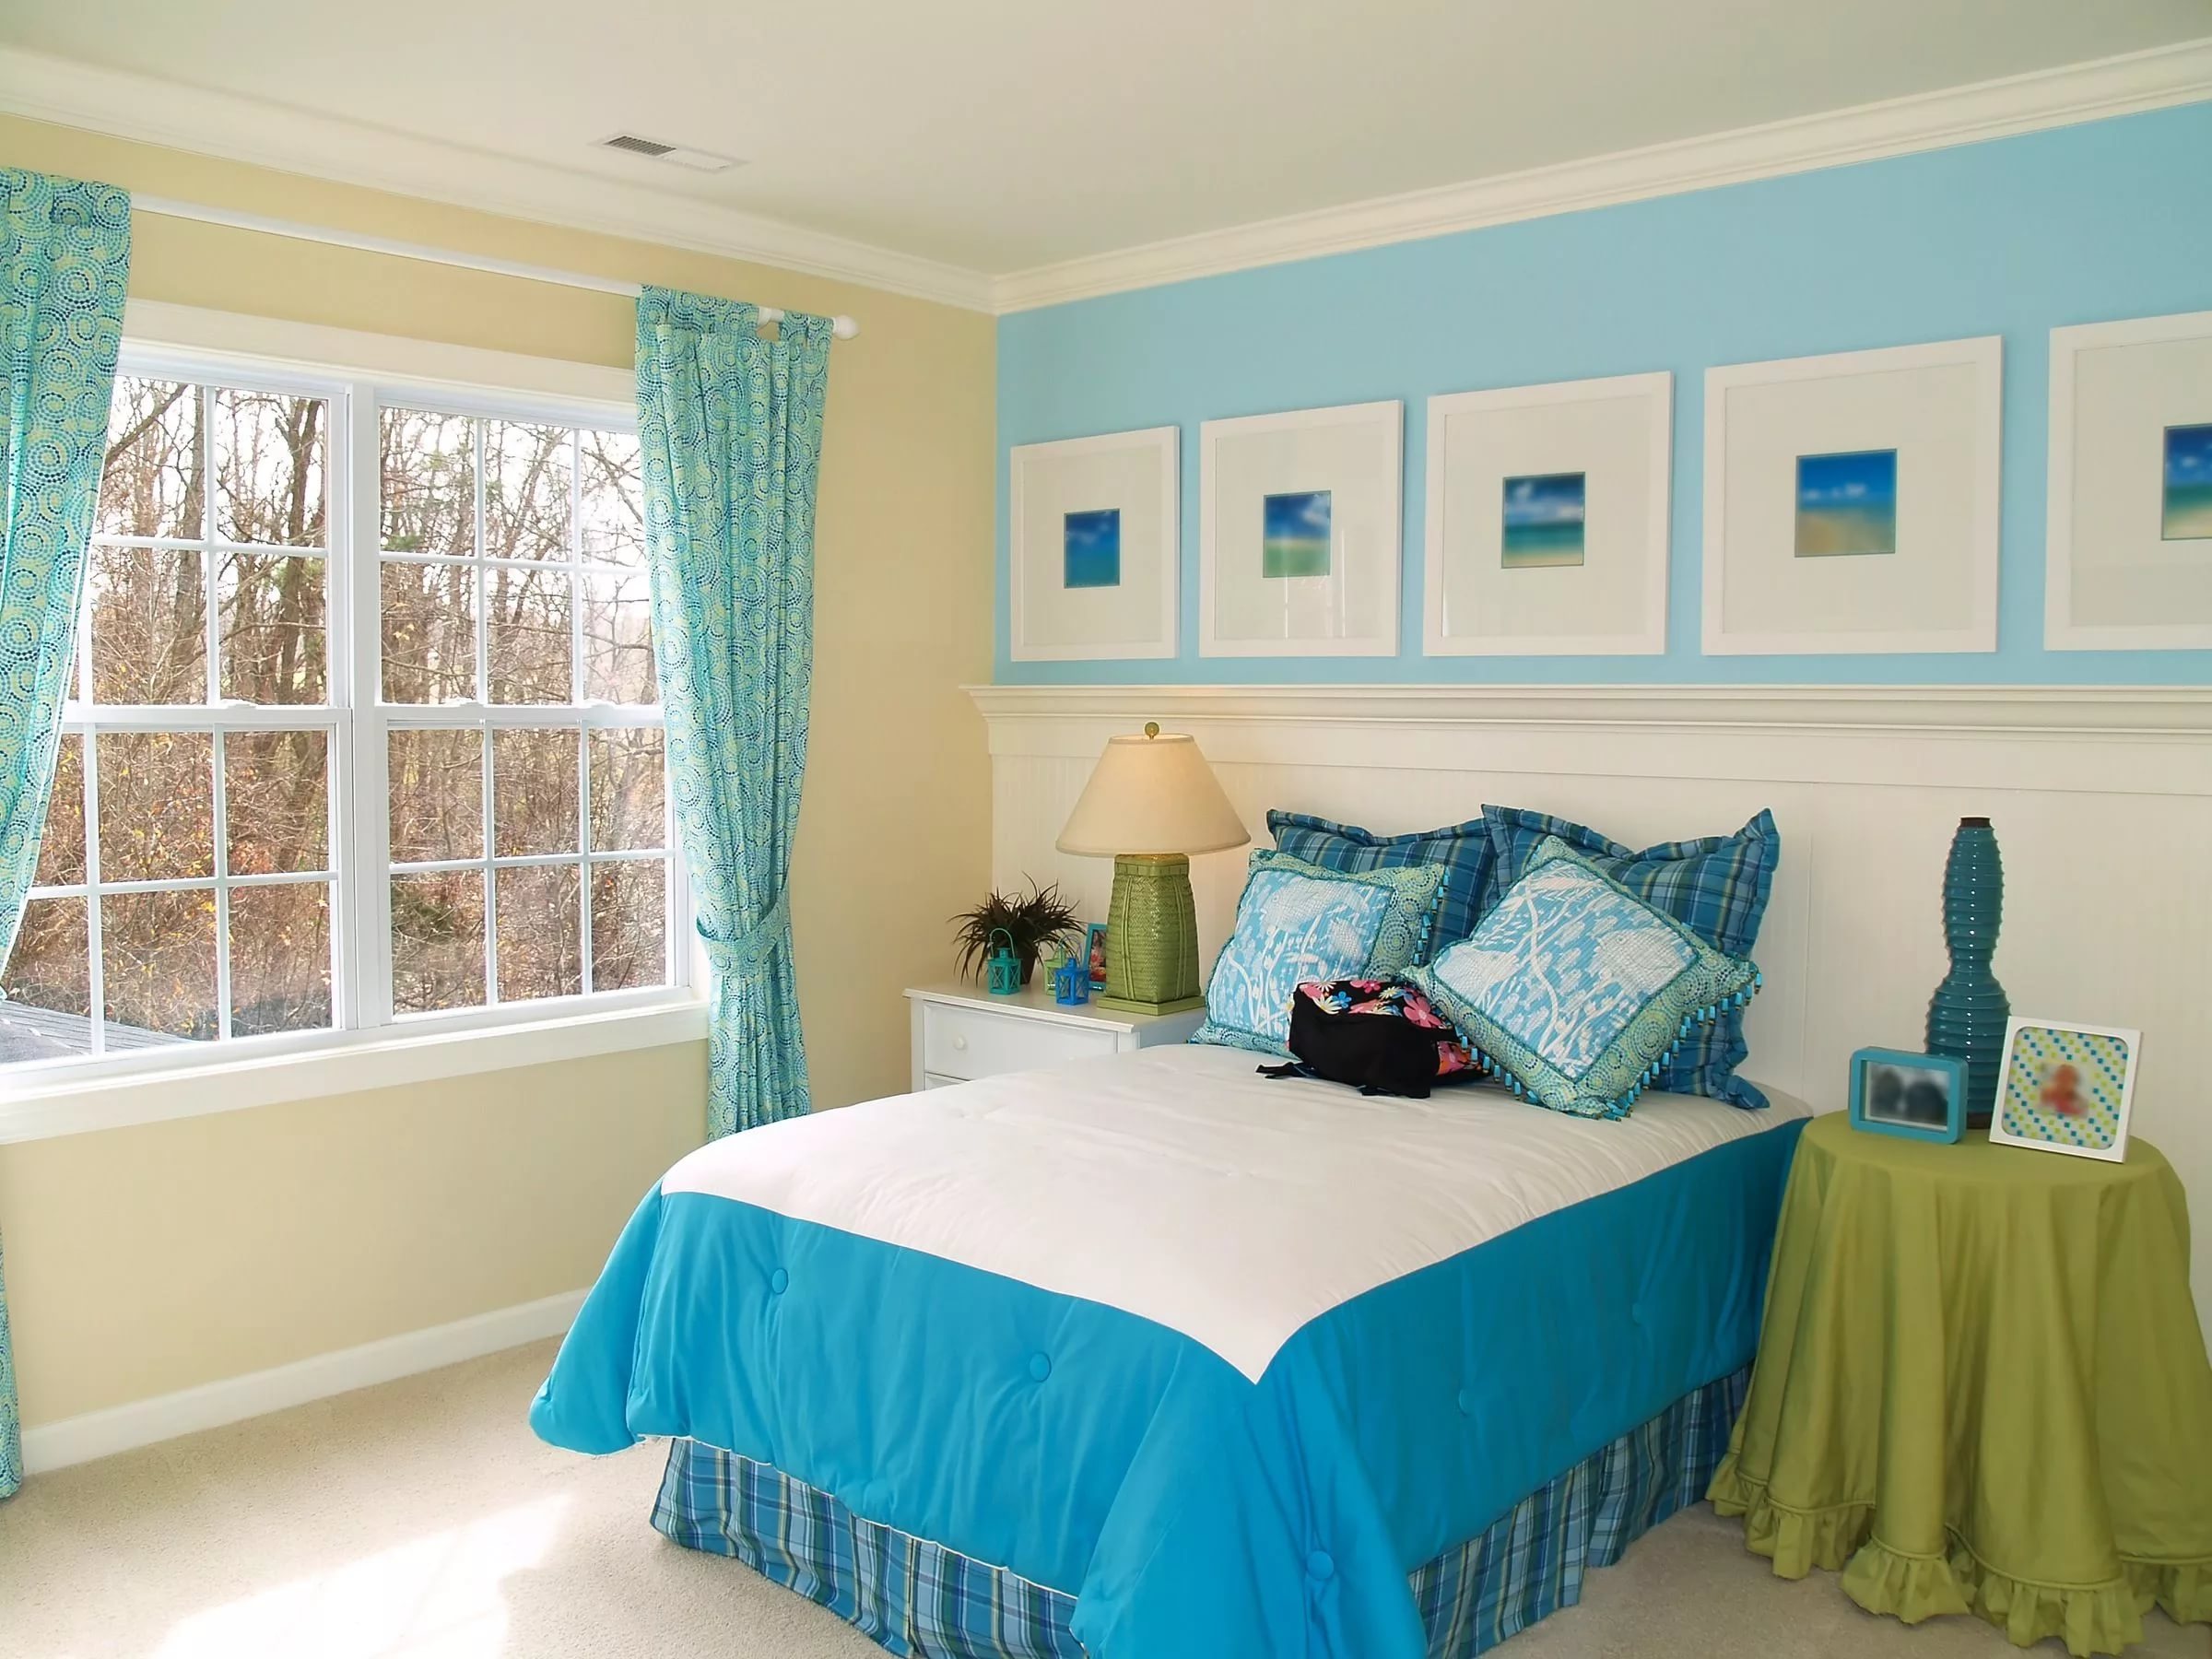 Дизайн комнат с голубыми обоями, фото спальни, детской, гостиной, кухни, примеры удачного сочетания белого, серого, золотого цвета с обоями голубыми